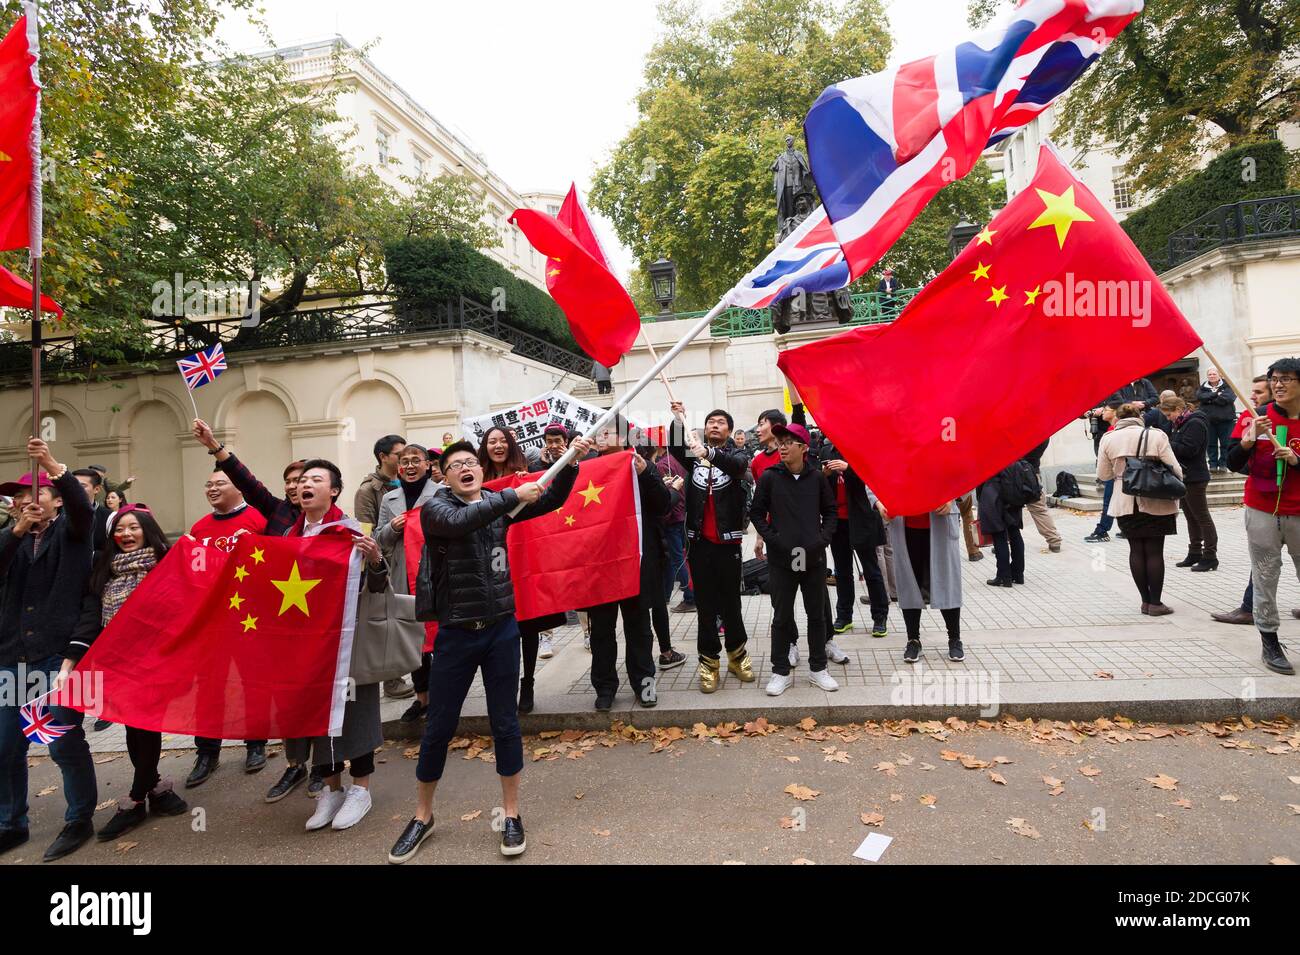 Anhänger Chinas begrüßen den chinesischen Präsidenten Xi Jinping am ersten Tag seines Staatsbesuchs in Großbritannien. The Mall, Saint Jame's Park, Westminster, London, Großbritannien. 20. Oktober 2015 Stockfoto